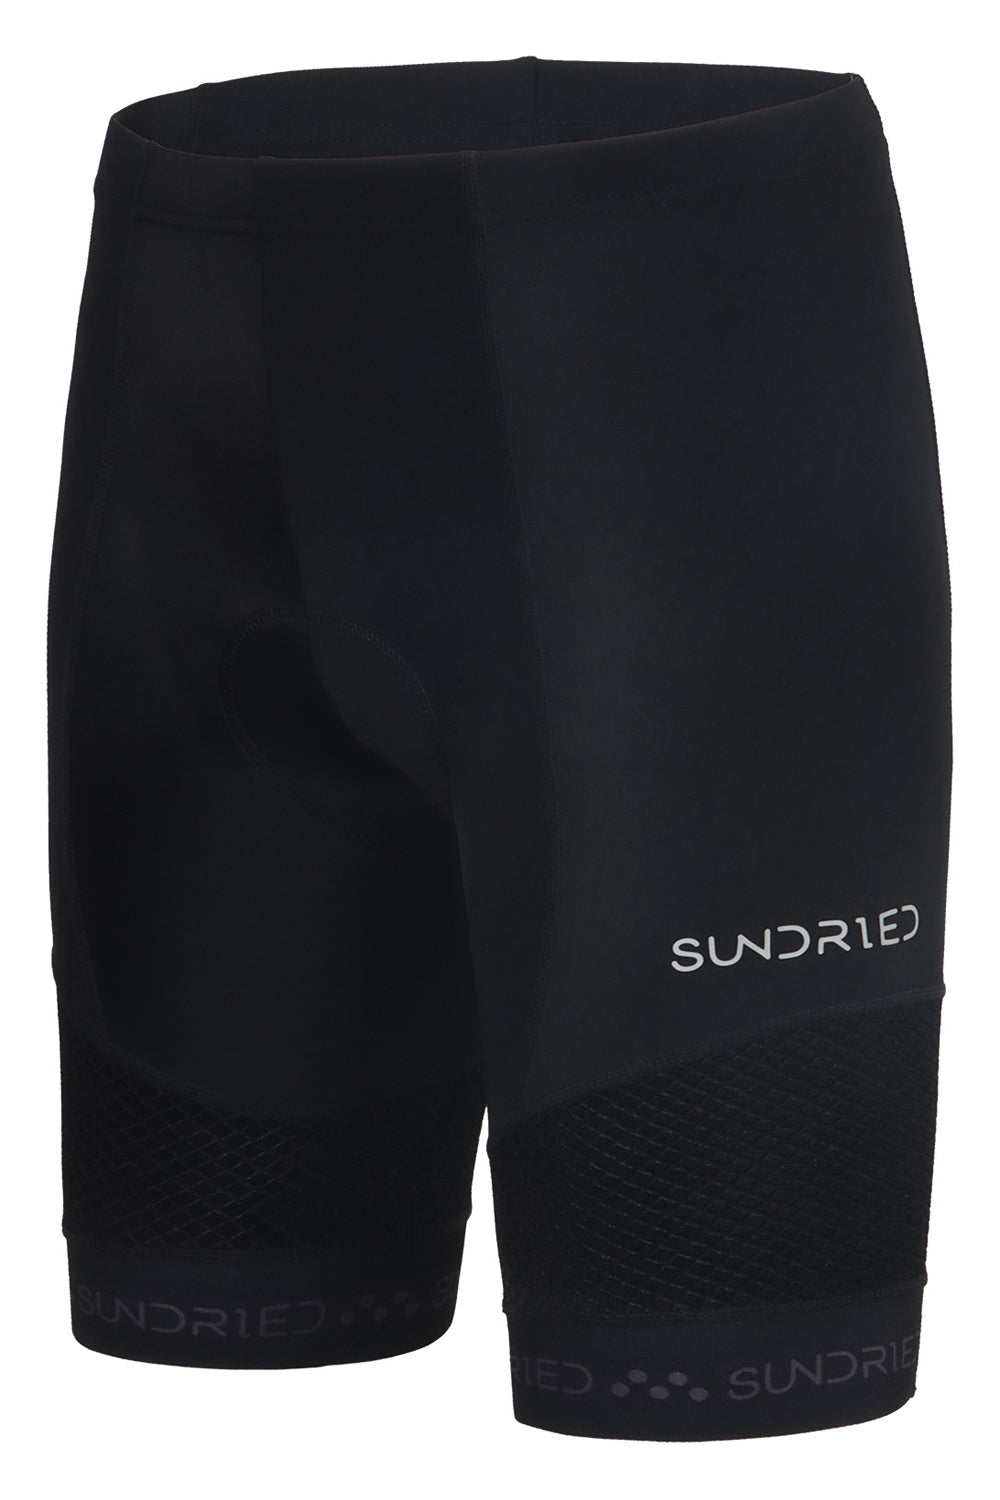 Sundried Men's Padded Training Shorts Shorts Activewear